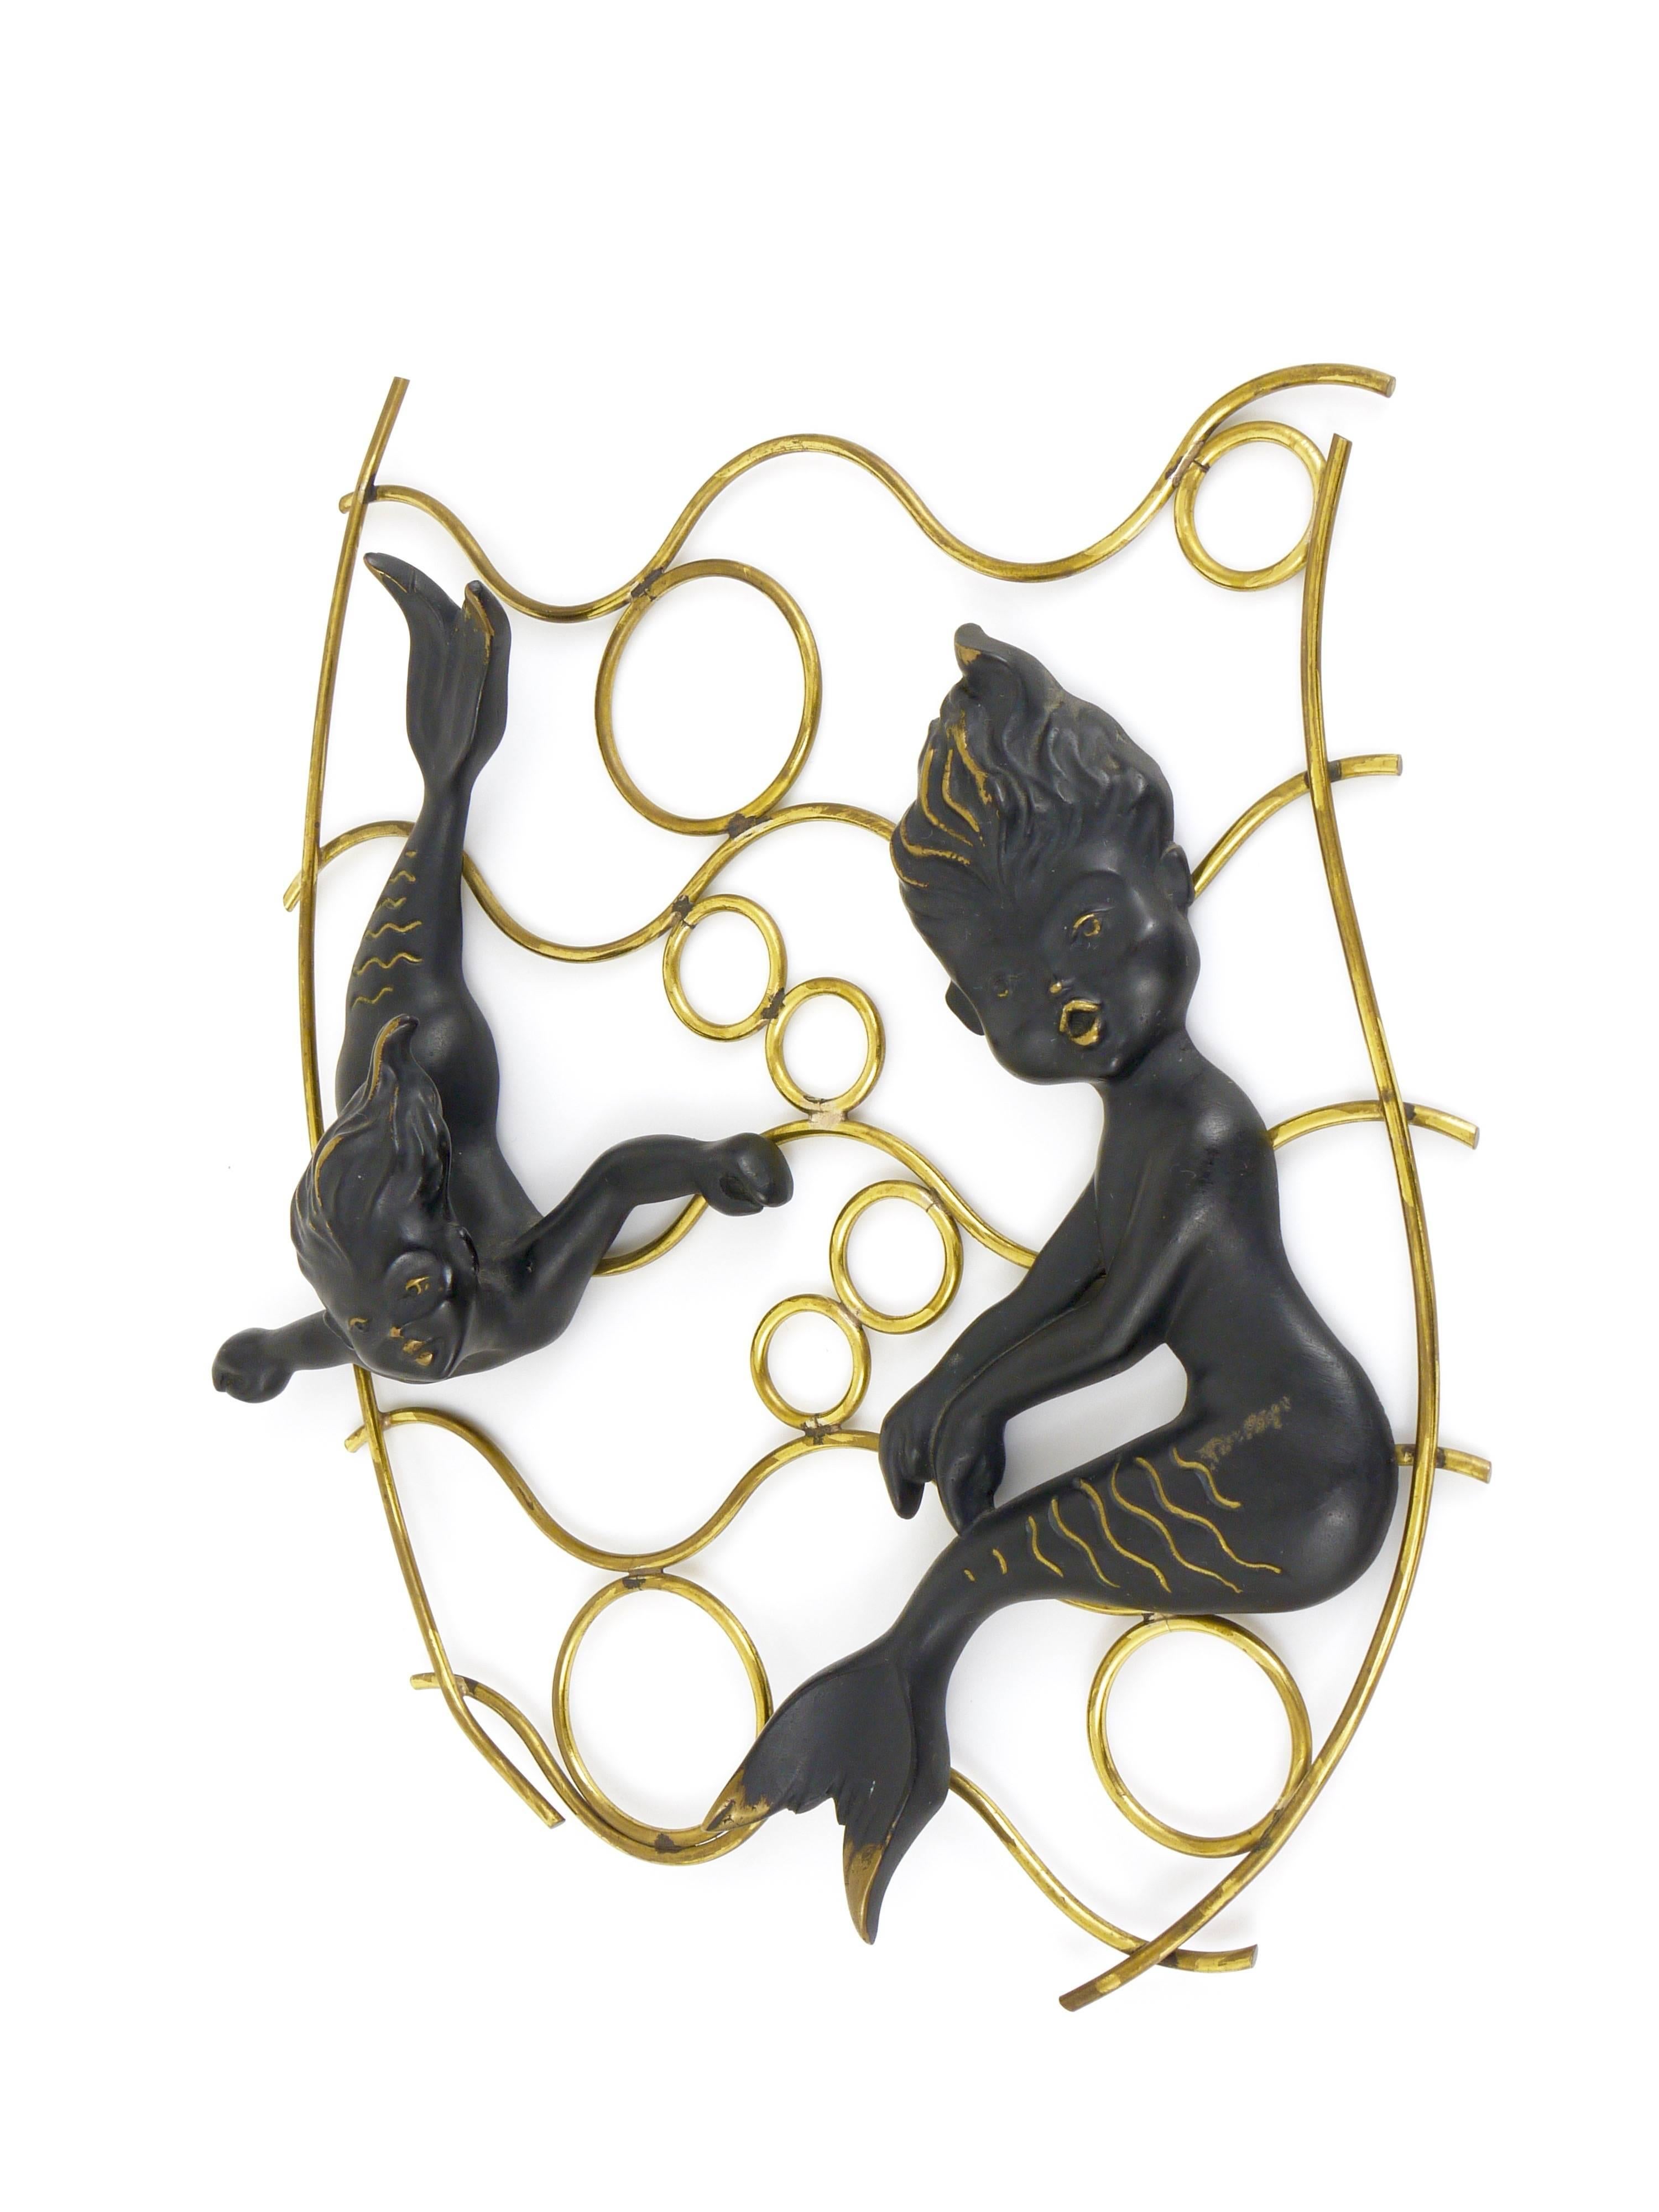 Austrian Modernist Mermaid Wall-Mounted Brass Sculptures, Hertha Baller, Austria, 1950s